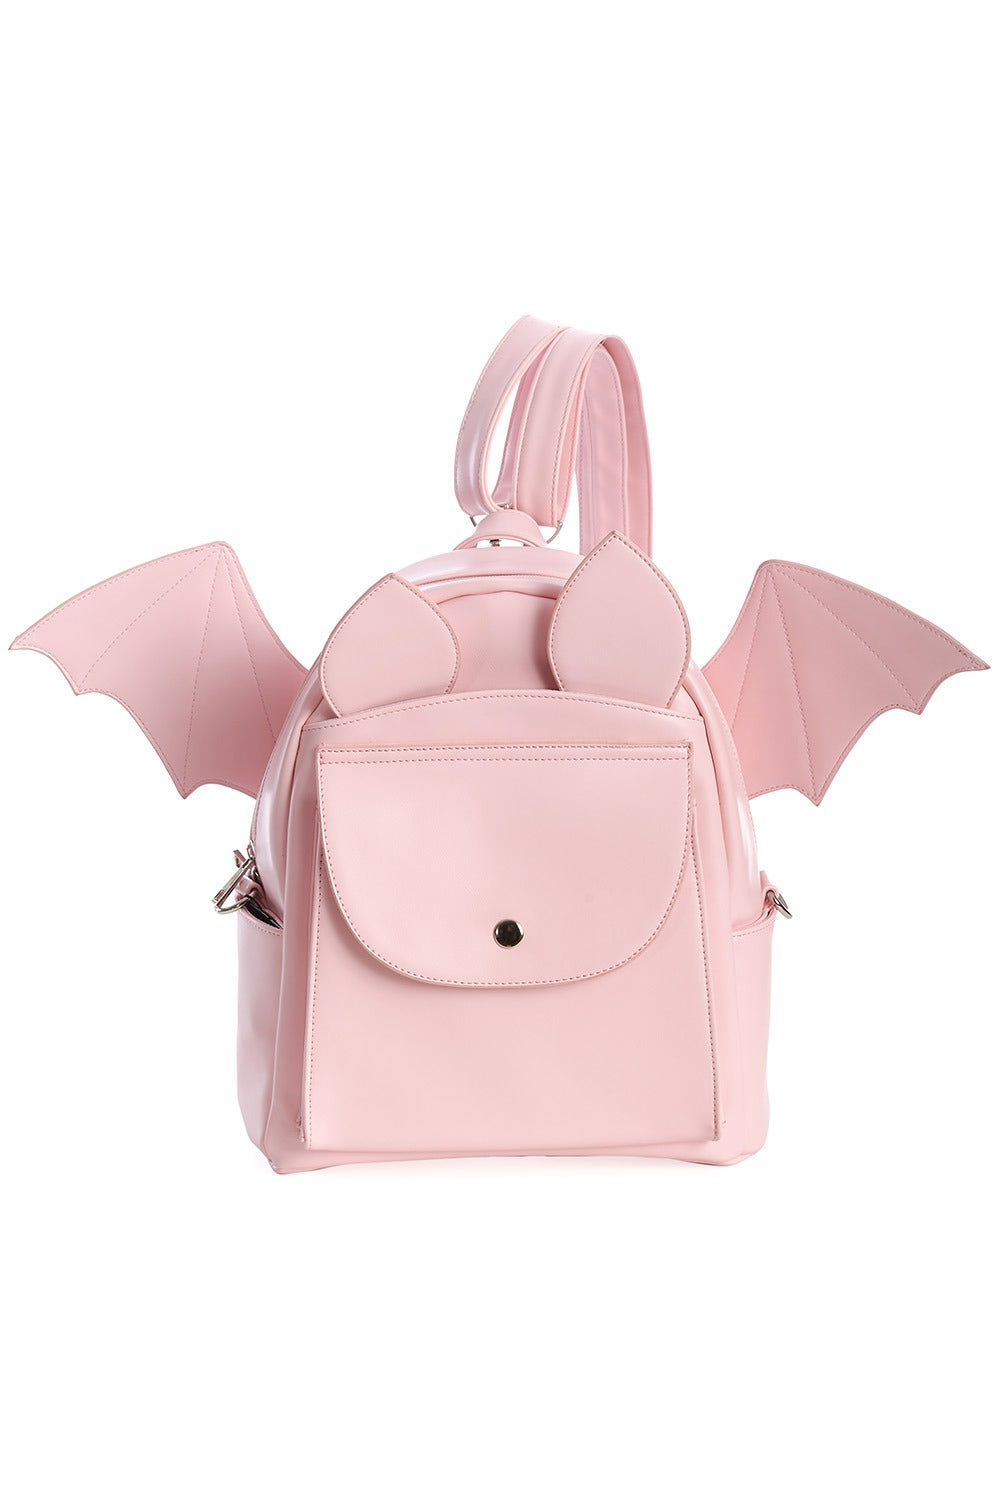 Pastel Goth Pink and Black Bat Shoulder Bag -  Denmark